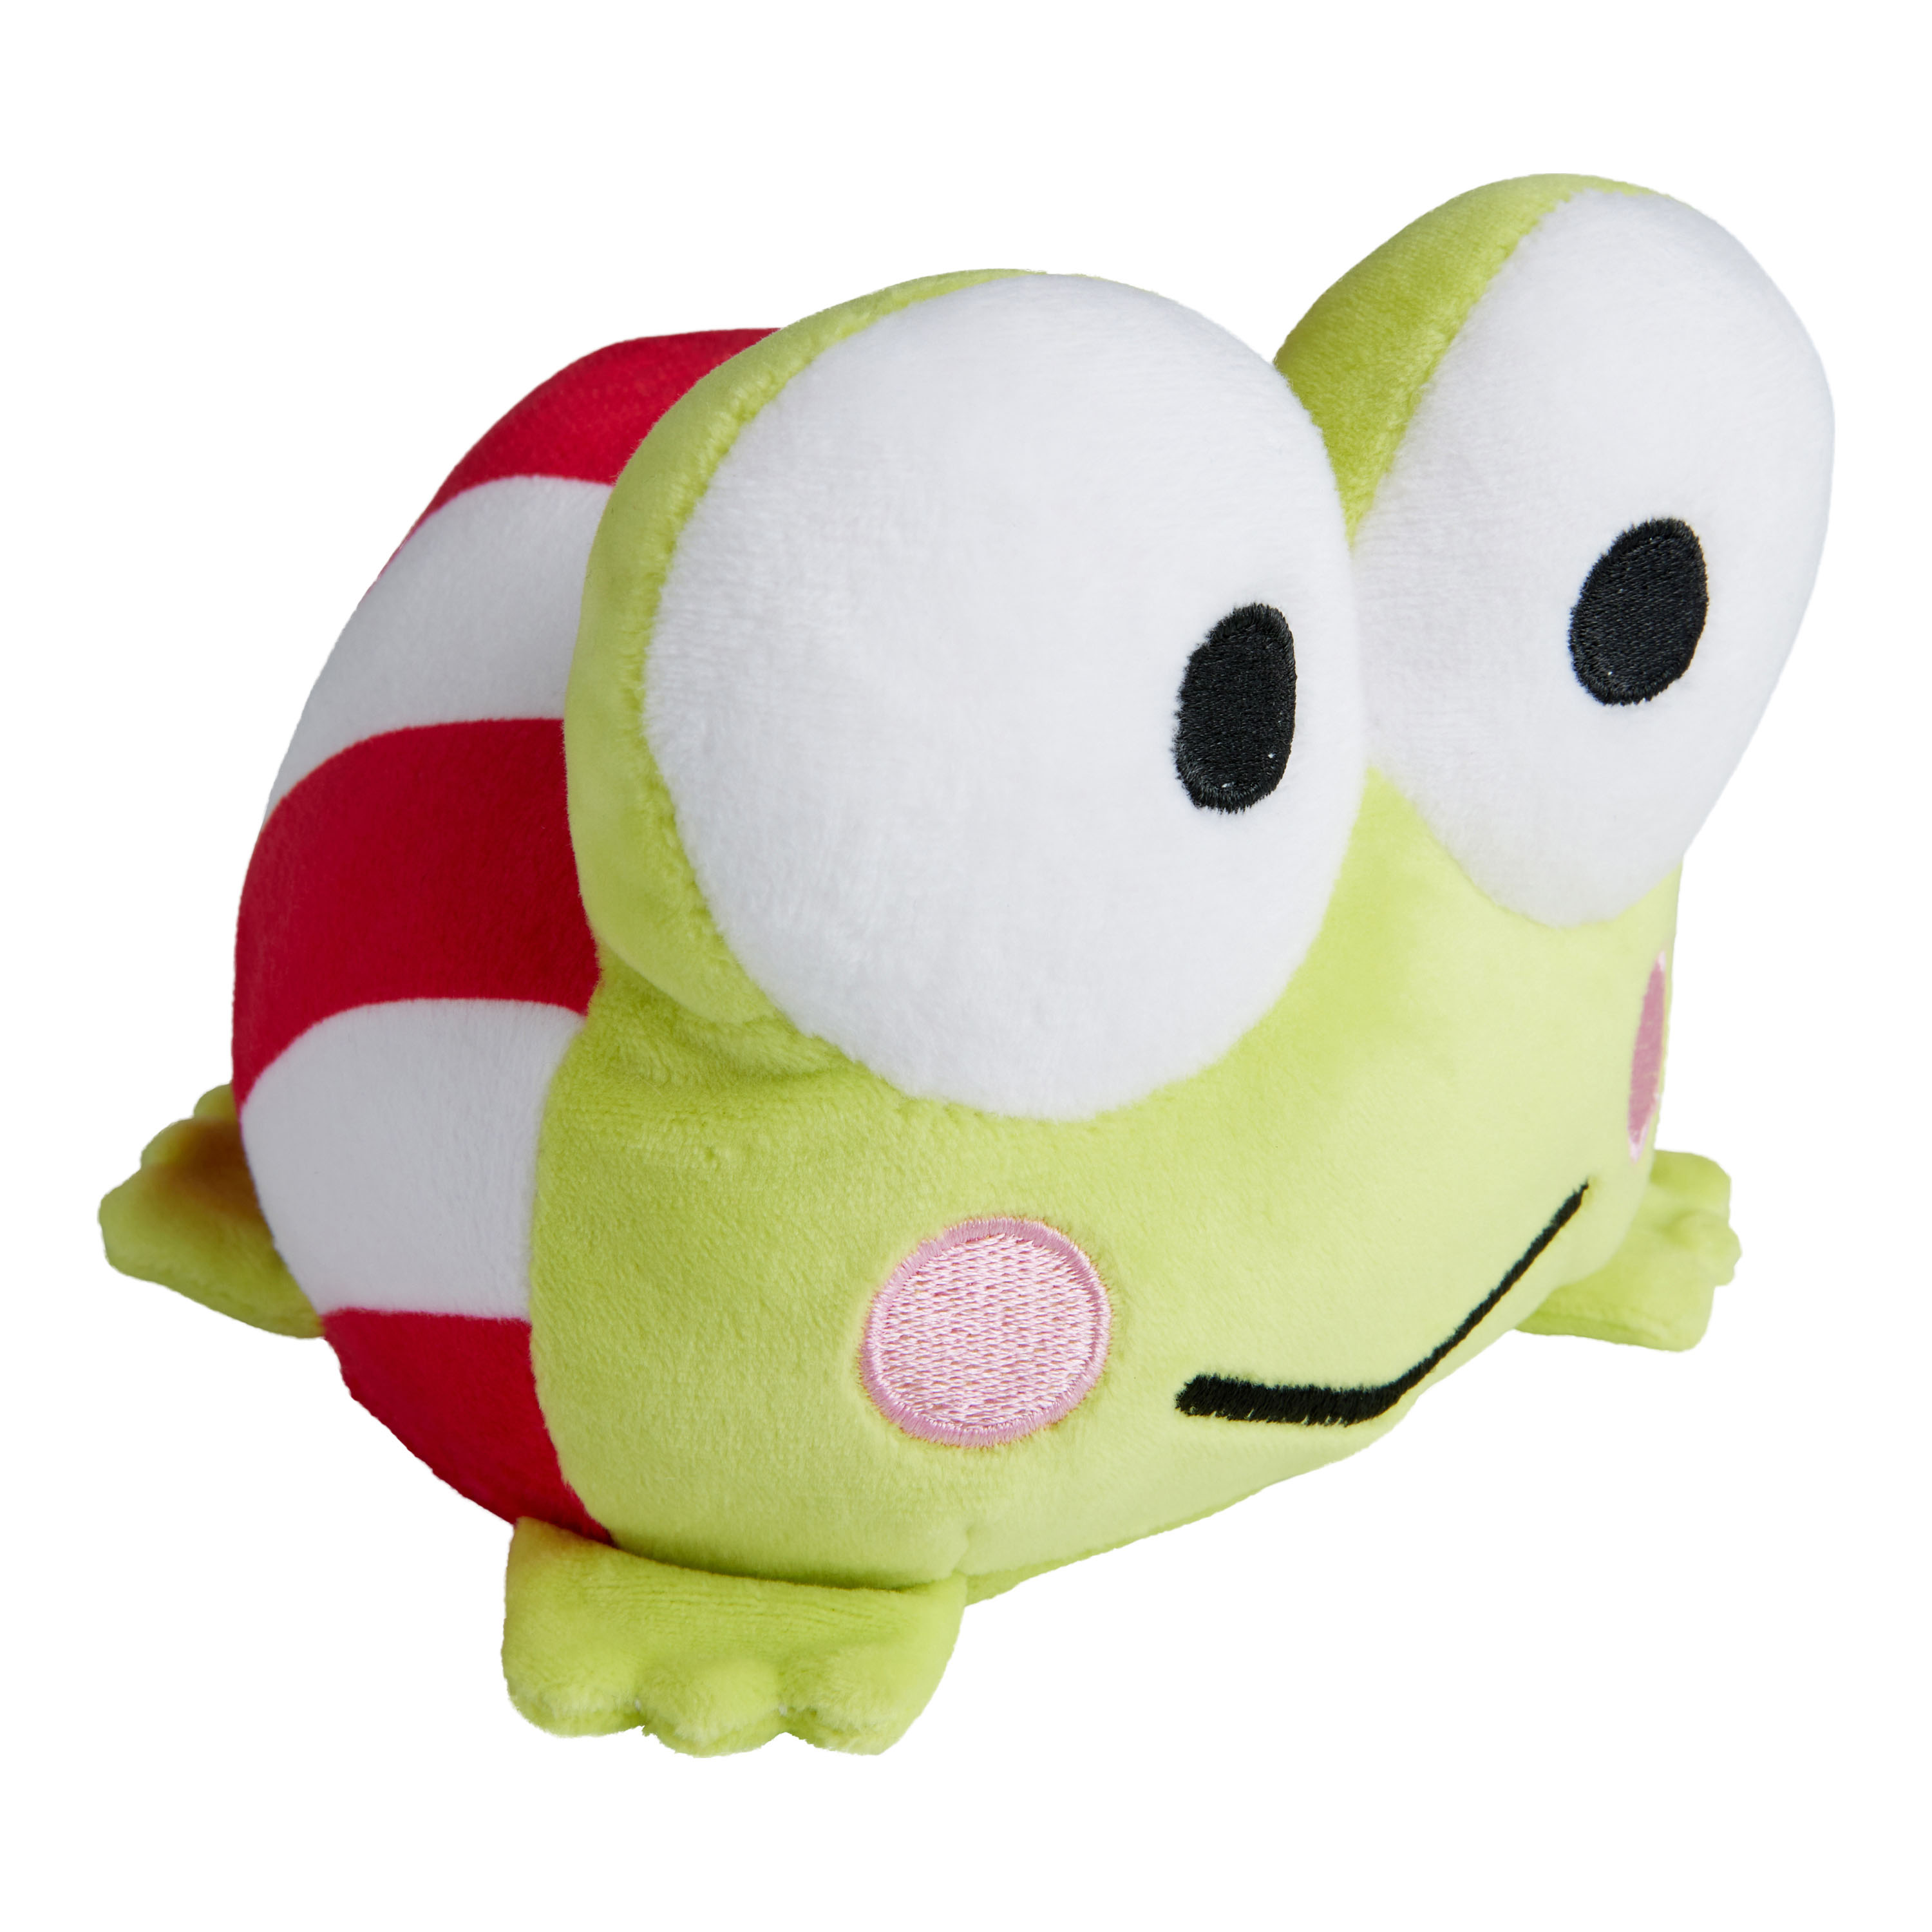 Keroppi Reversible Plush Stuffed Toy - World Market